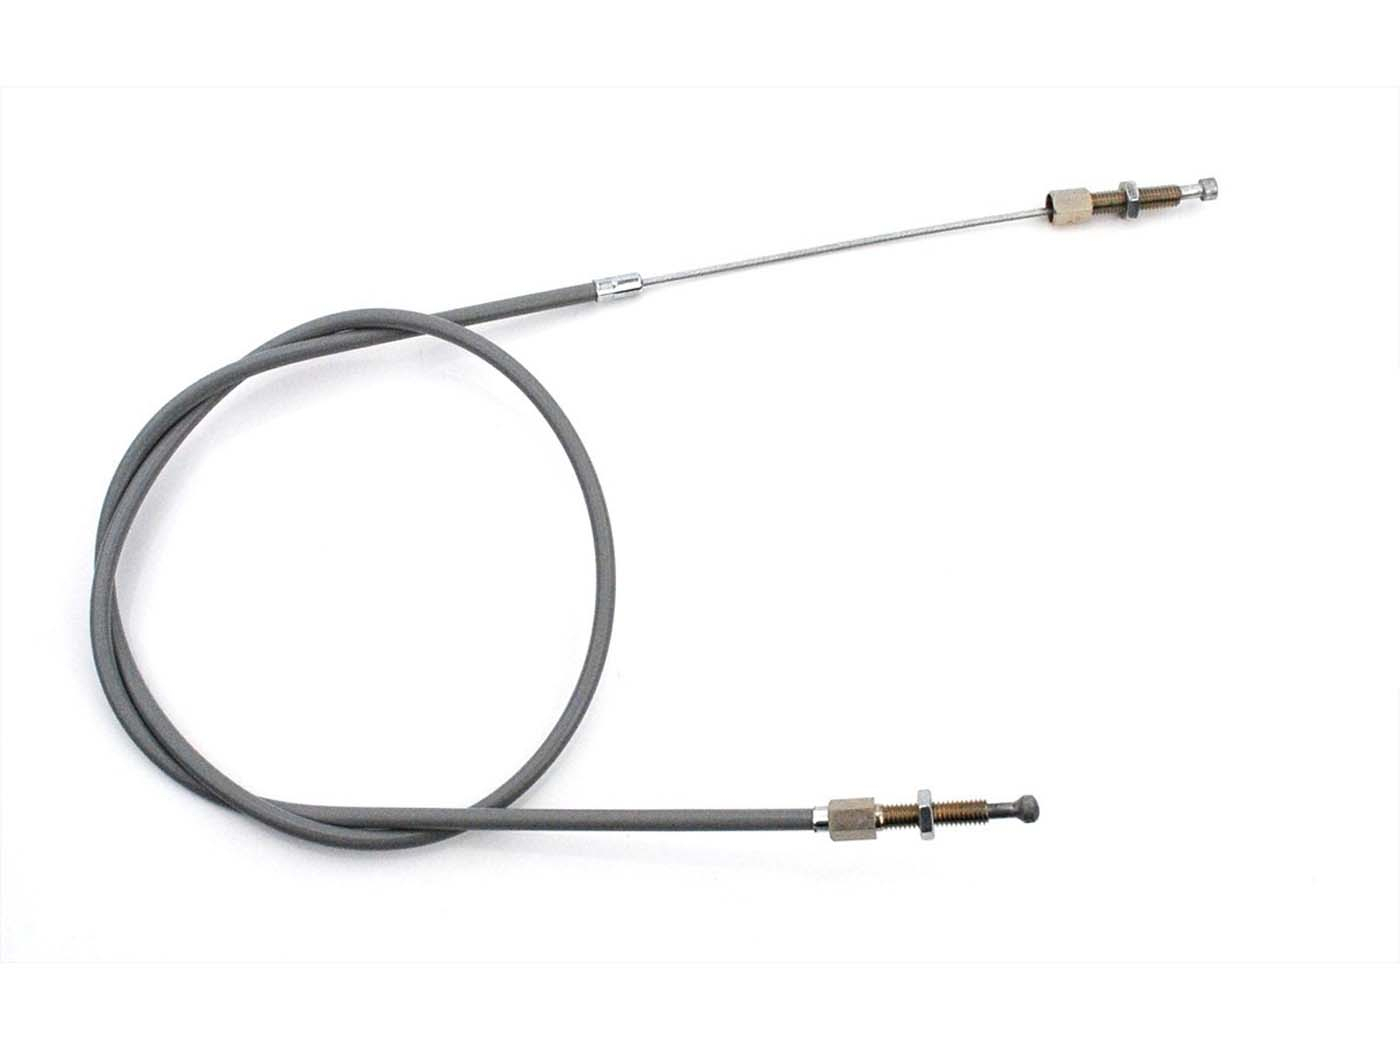 Handbrake Cable For DKW Hummel Super, Victoria Vicky Standard, Express Super Type 102, 116, 117, 126, 156